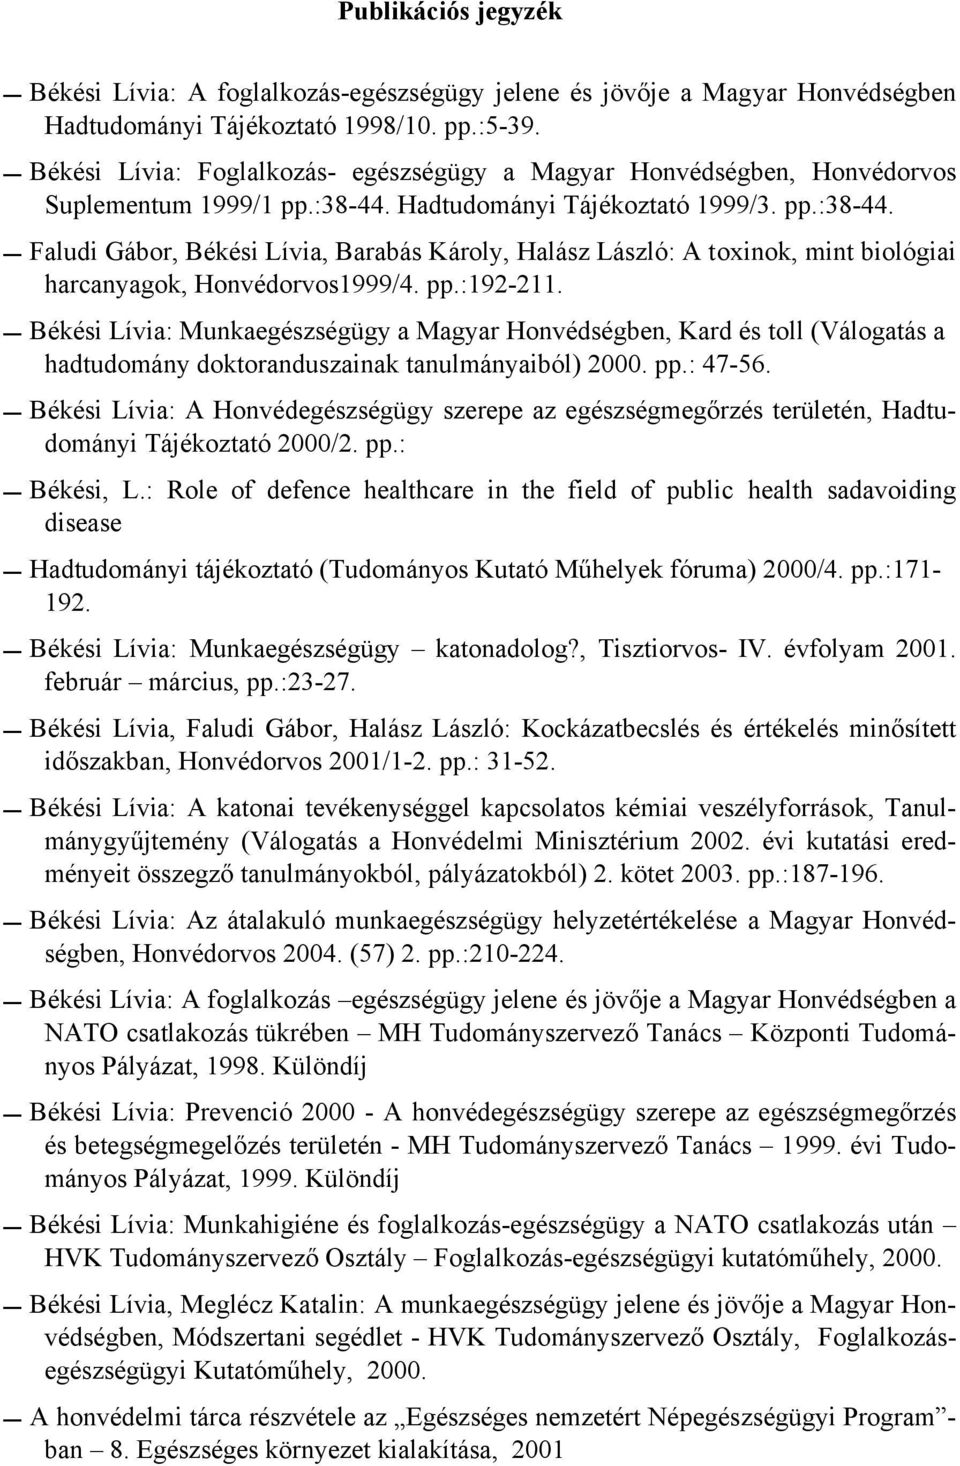 Hadtudományi Tájékoztató 1999/3. pp.:38-44. Faludi Gábor, Békési Lívia, Barabás Károly, Halász László: A toxinok, mint biológiai harcanyagok, Honvédorvos1999/4. pp.:192-211.